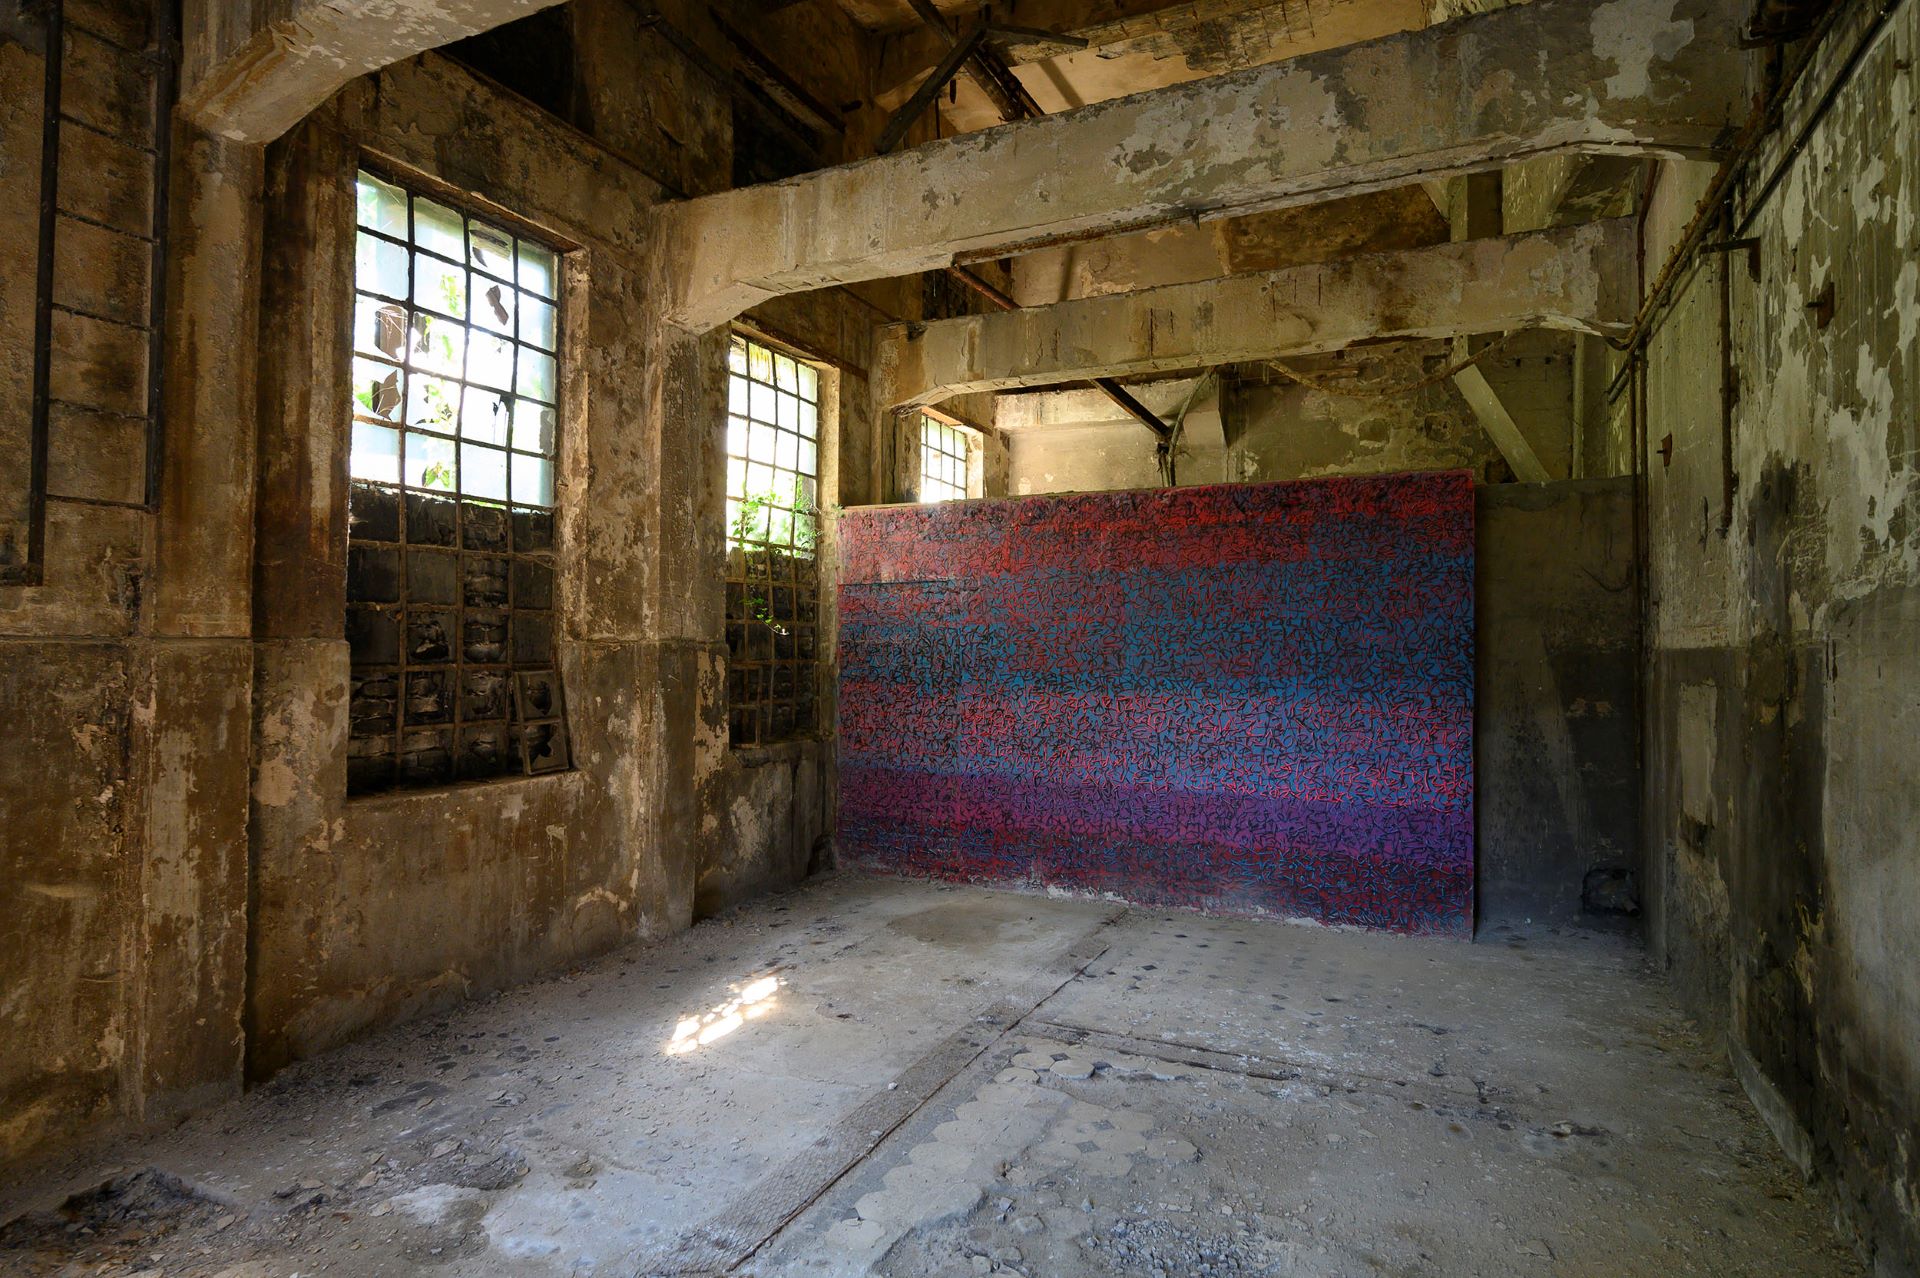 Im Inneren des Hüttengeländes befindet sich eine Kunstausstellung in Form einer großen Wand, die mit einem abstrakten, bunten Muster bedeckt ist.